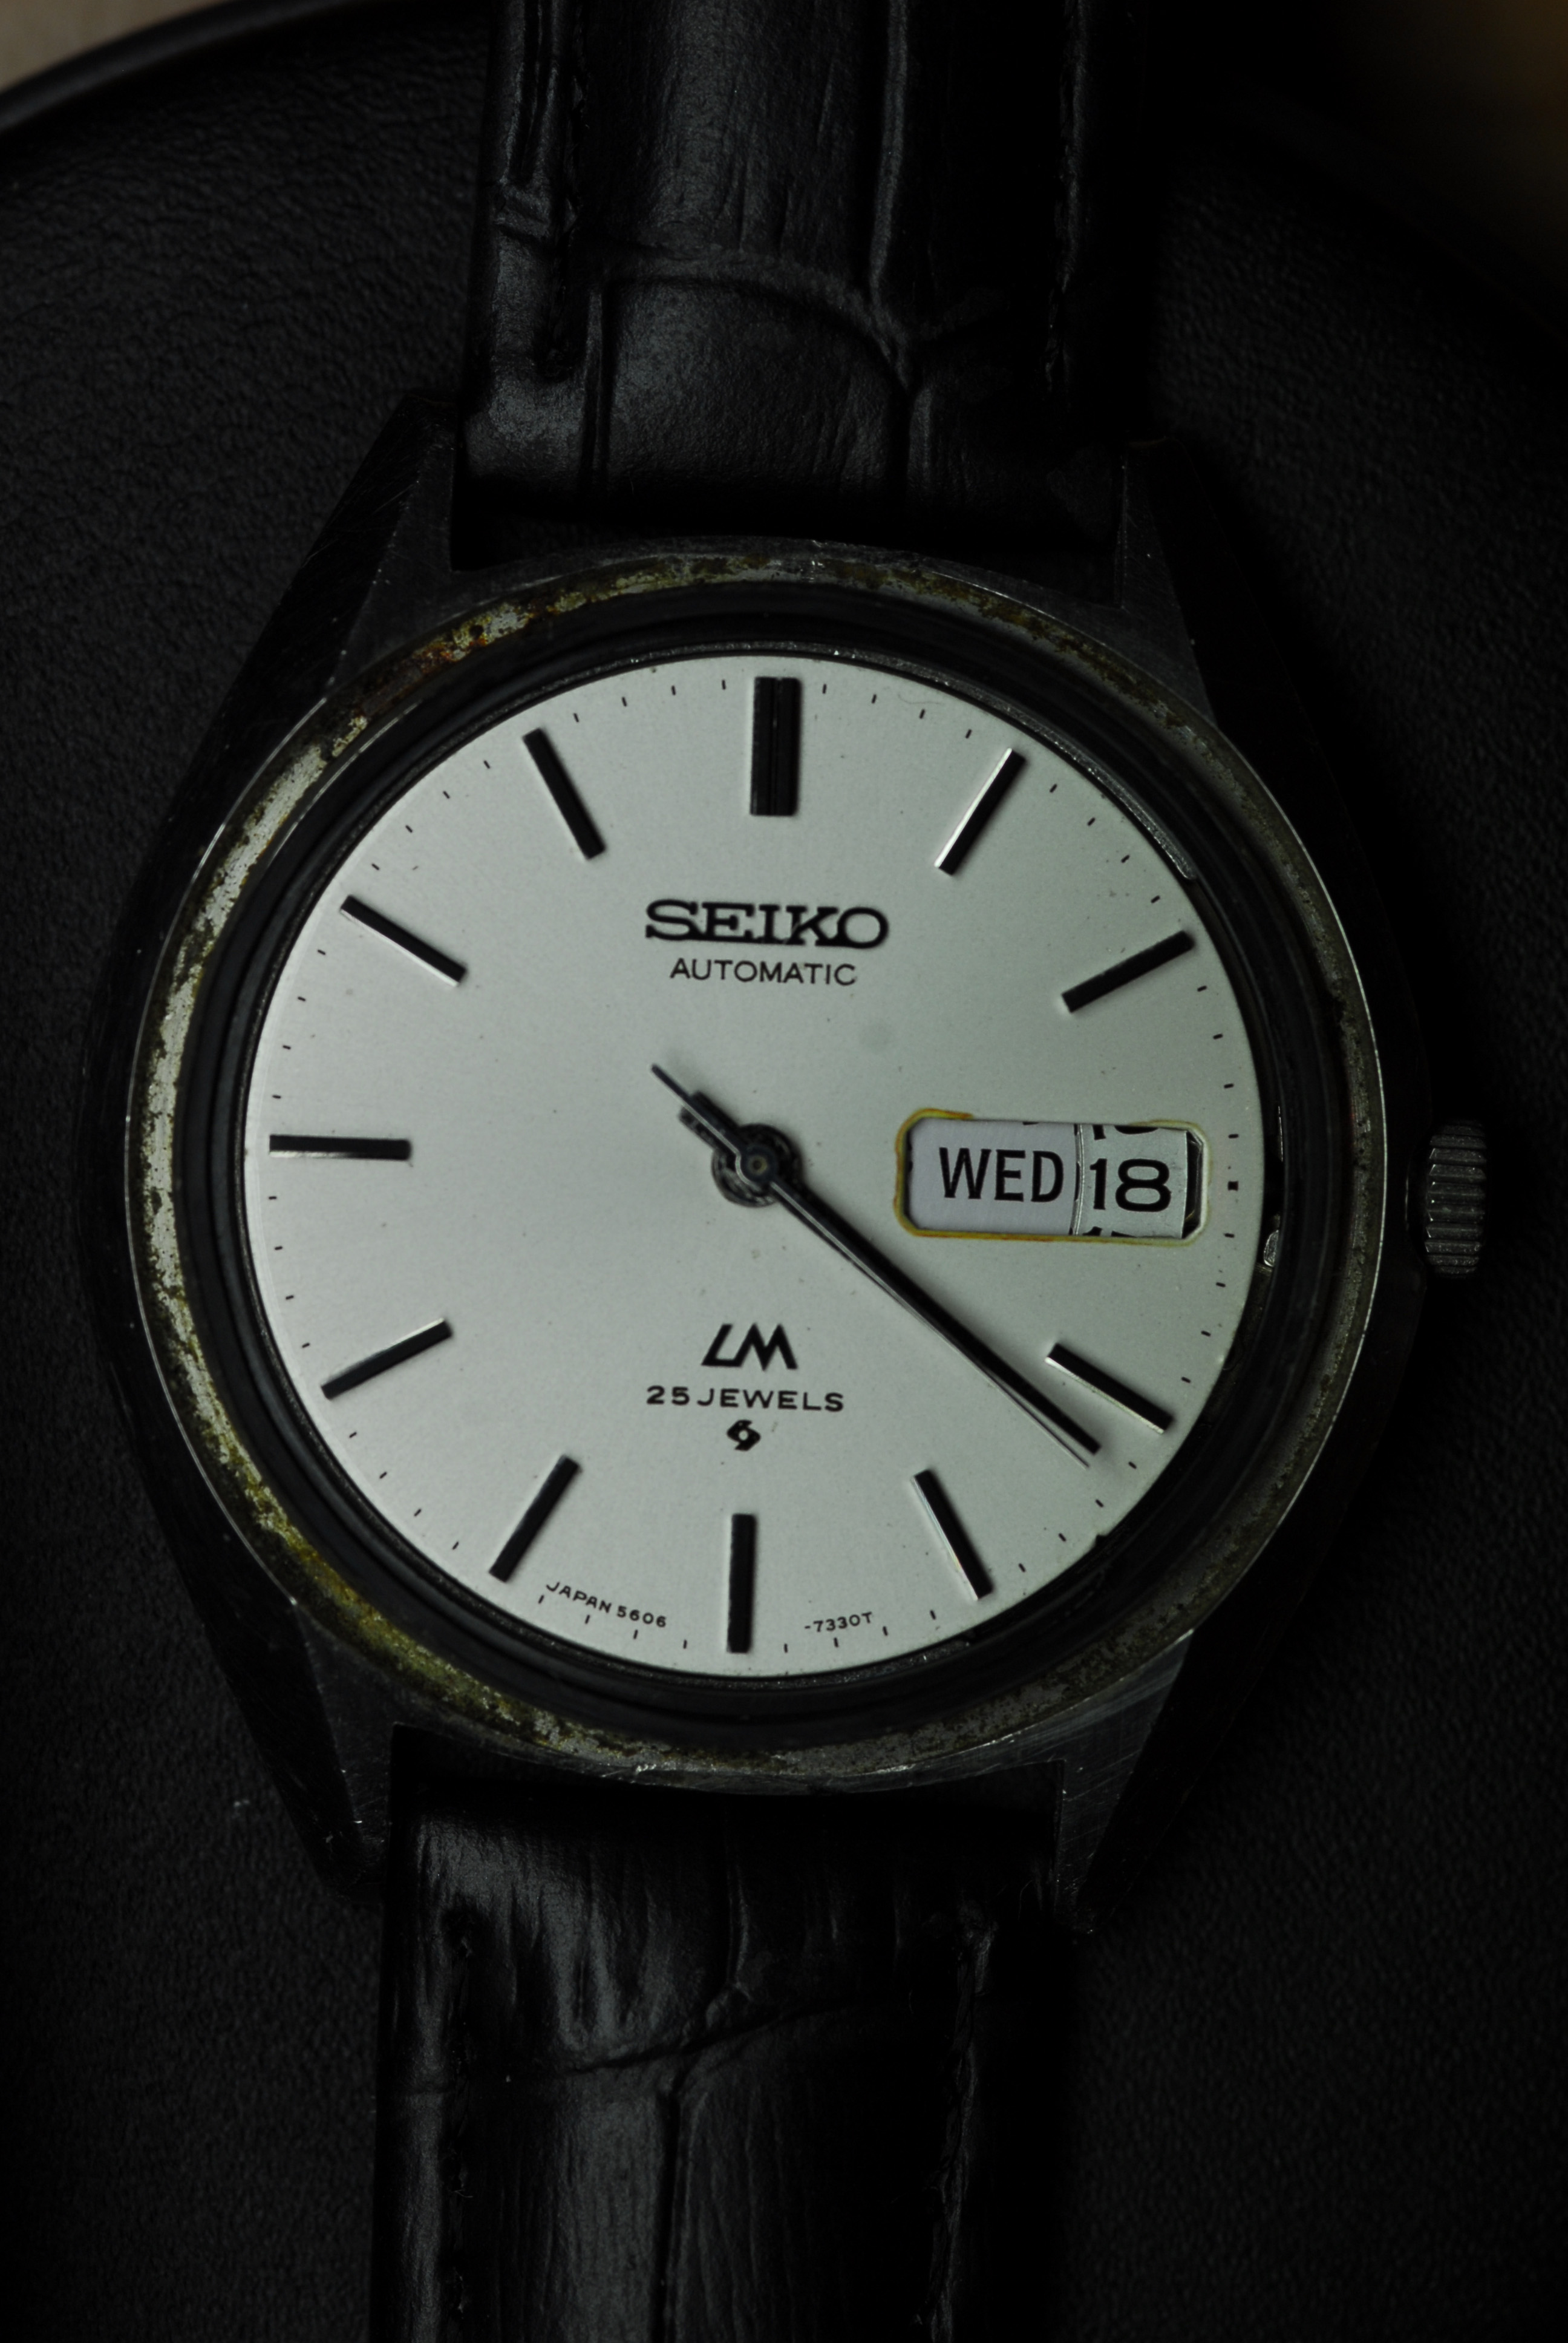 Seiko LM 5606 met quickset problemen - Vintage Horlogeforum -   - het forum voor liefhebbers van horloges